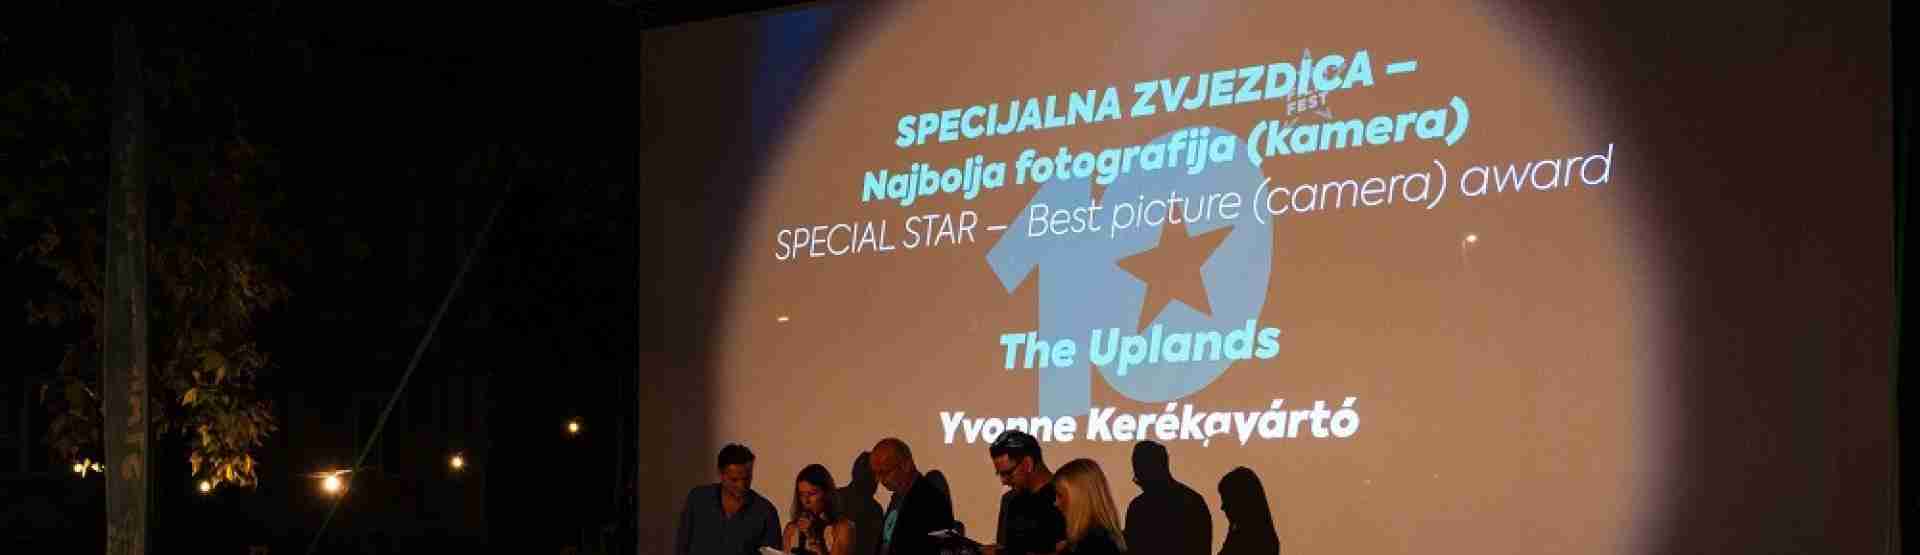 Kerékgyártó Yvonne Egy csapat vagyunk című rövidfilmje kapta a legjobb operatőri munkának járó dijat a sziszeki Star Film Fest-en